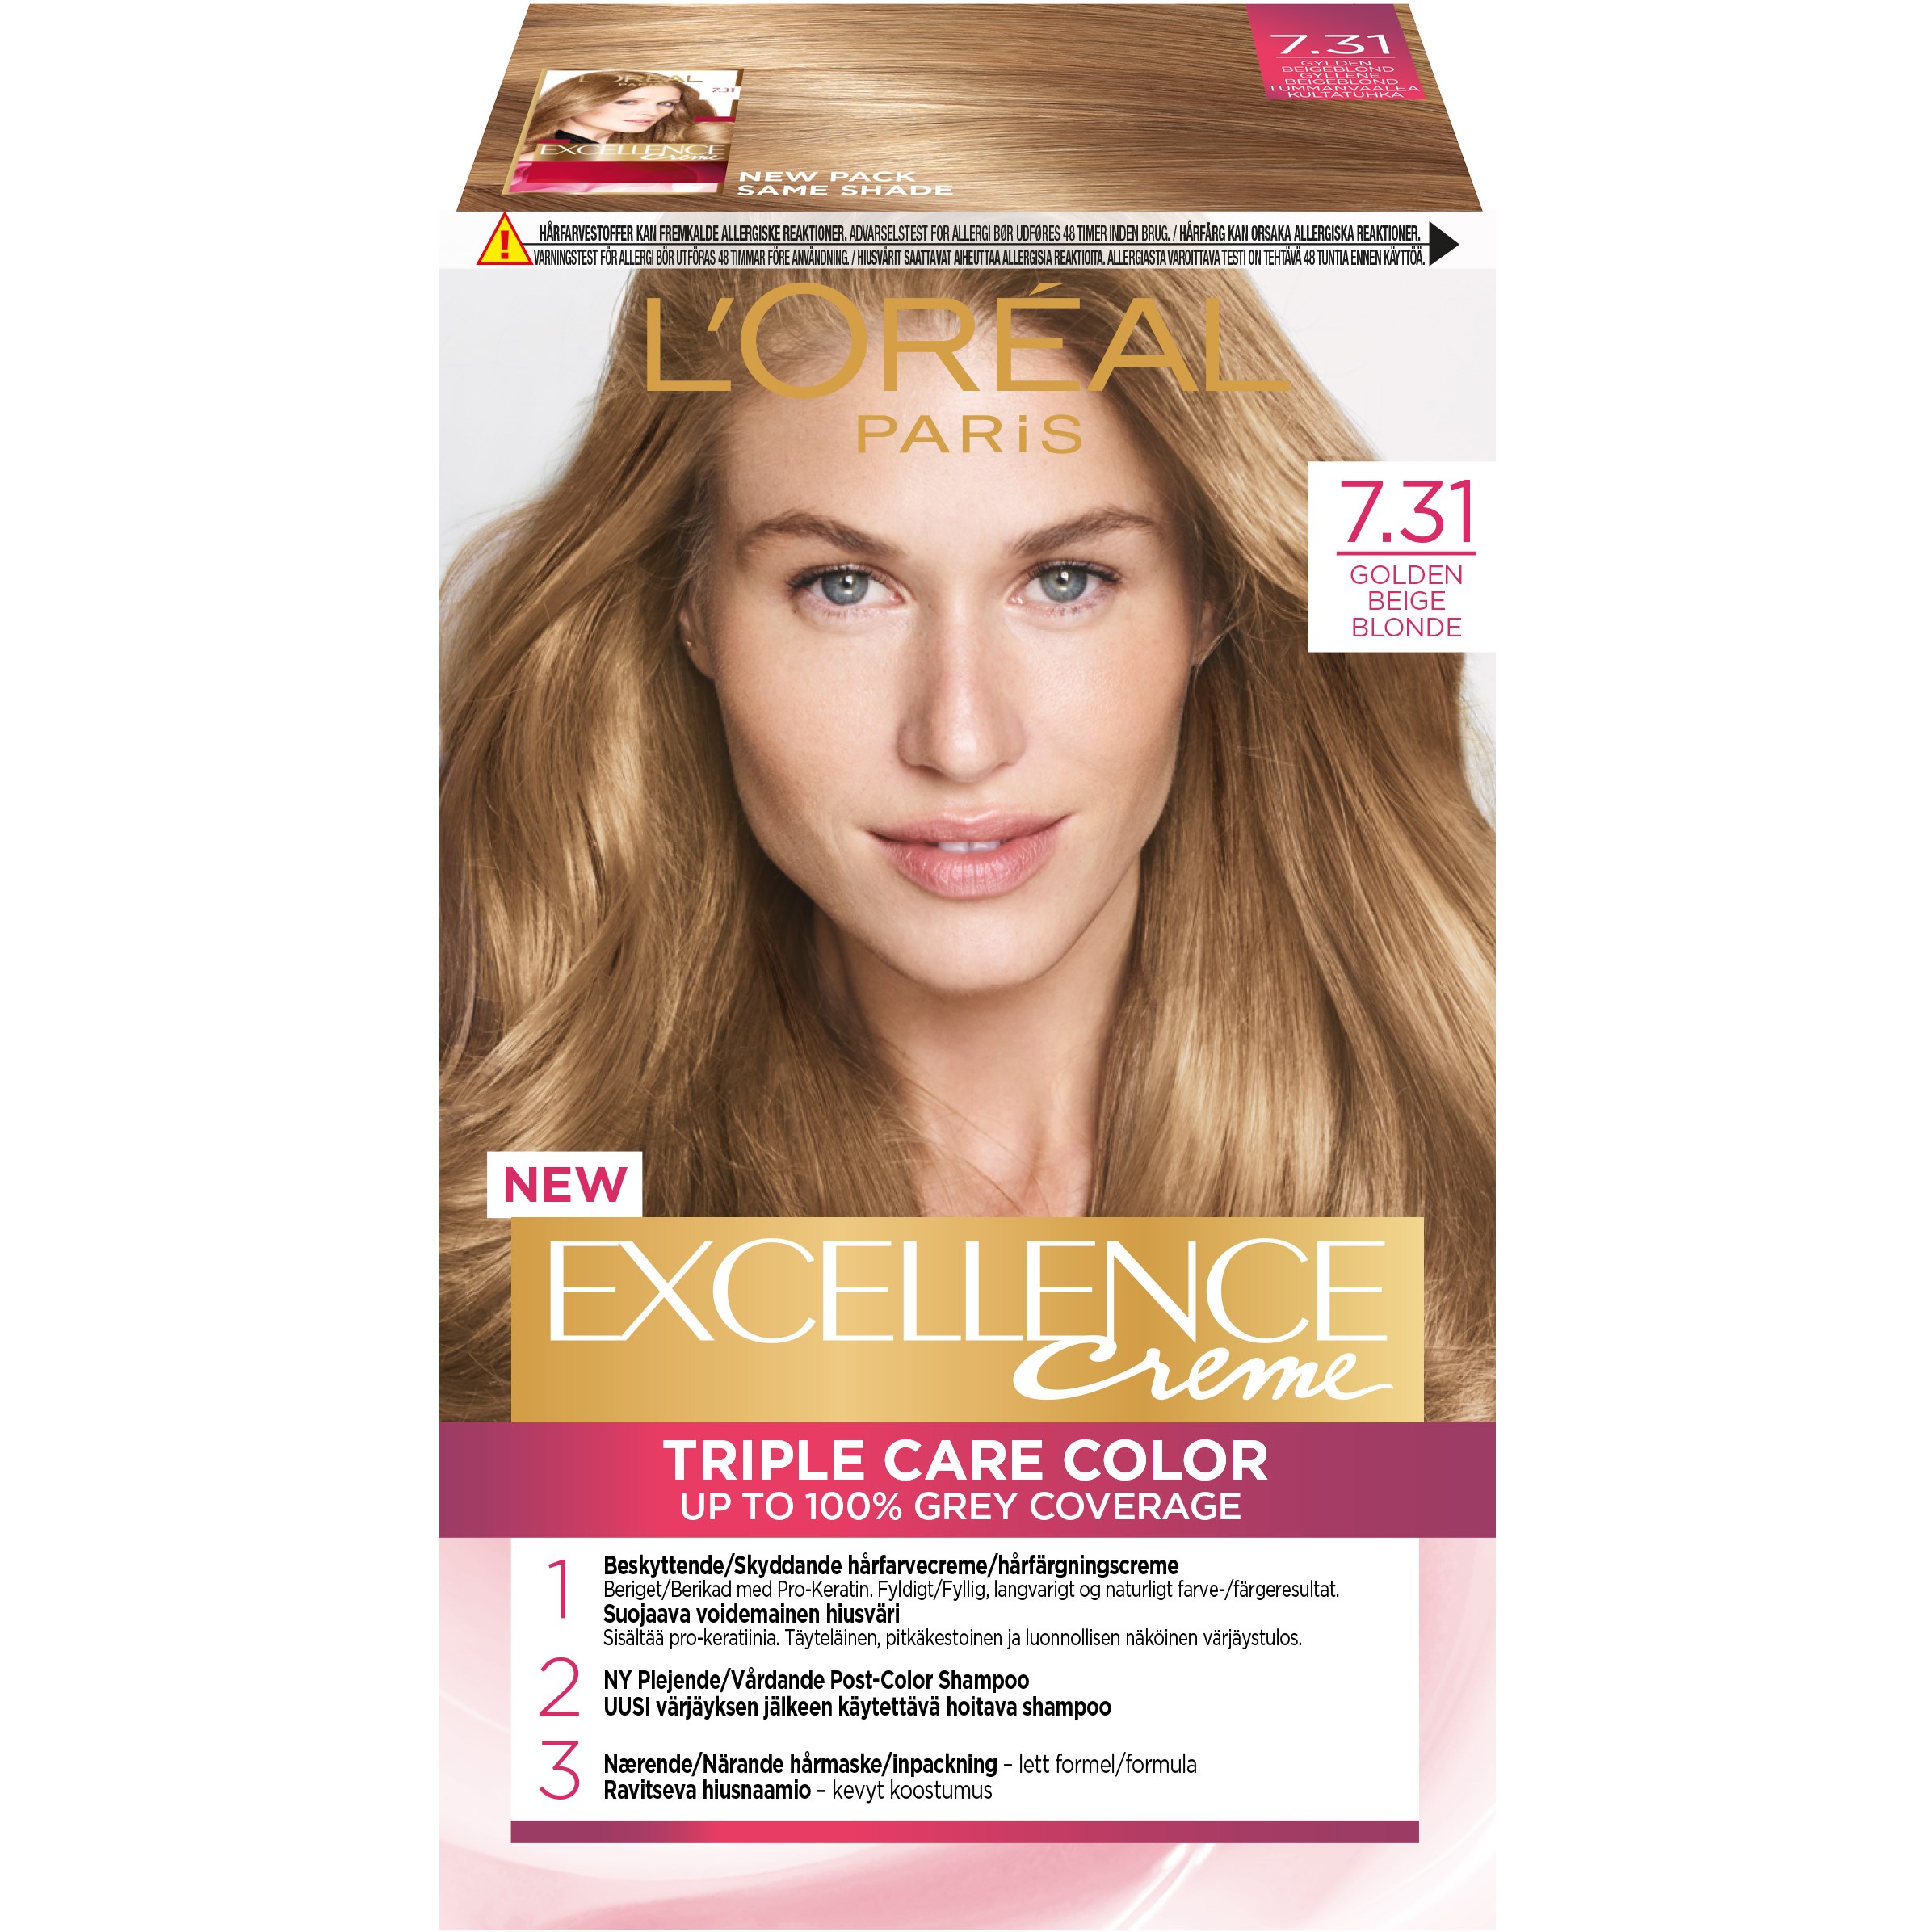 Bilde av Loreal Paris Excellence Crème Excellence Creme 7.31 Golden Beige Blond